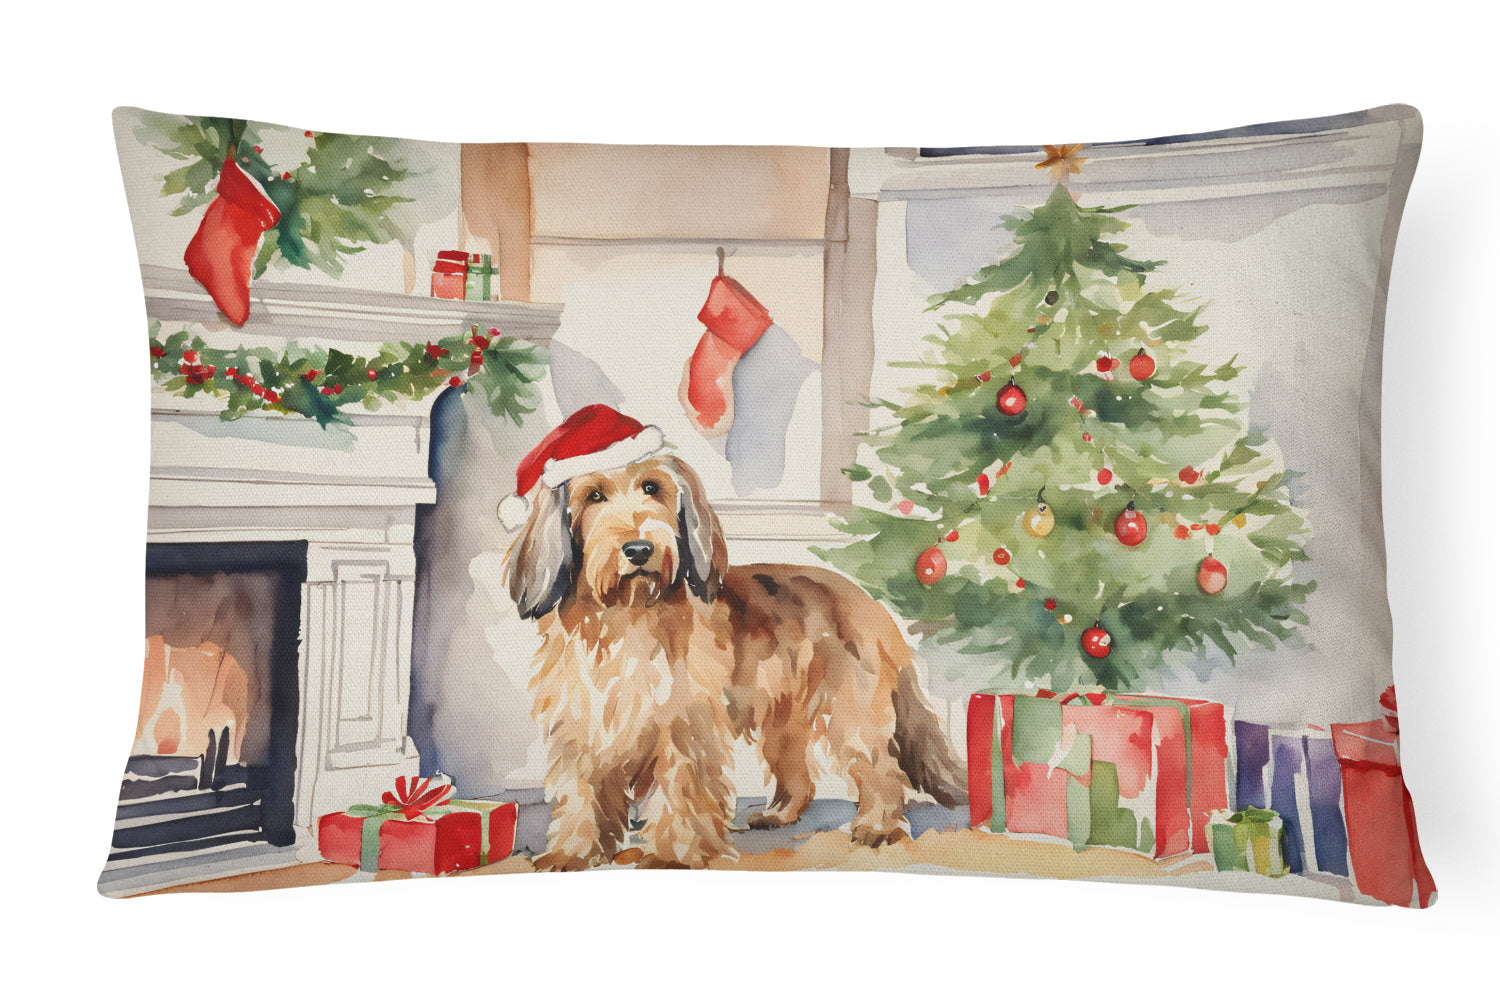 Buy this Otterhound Cozy Christmas Throw Pillow